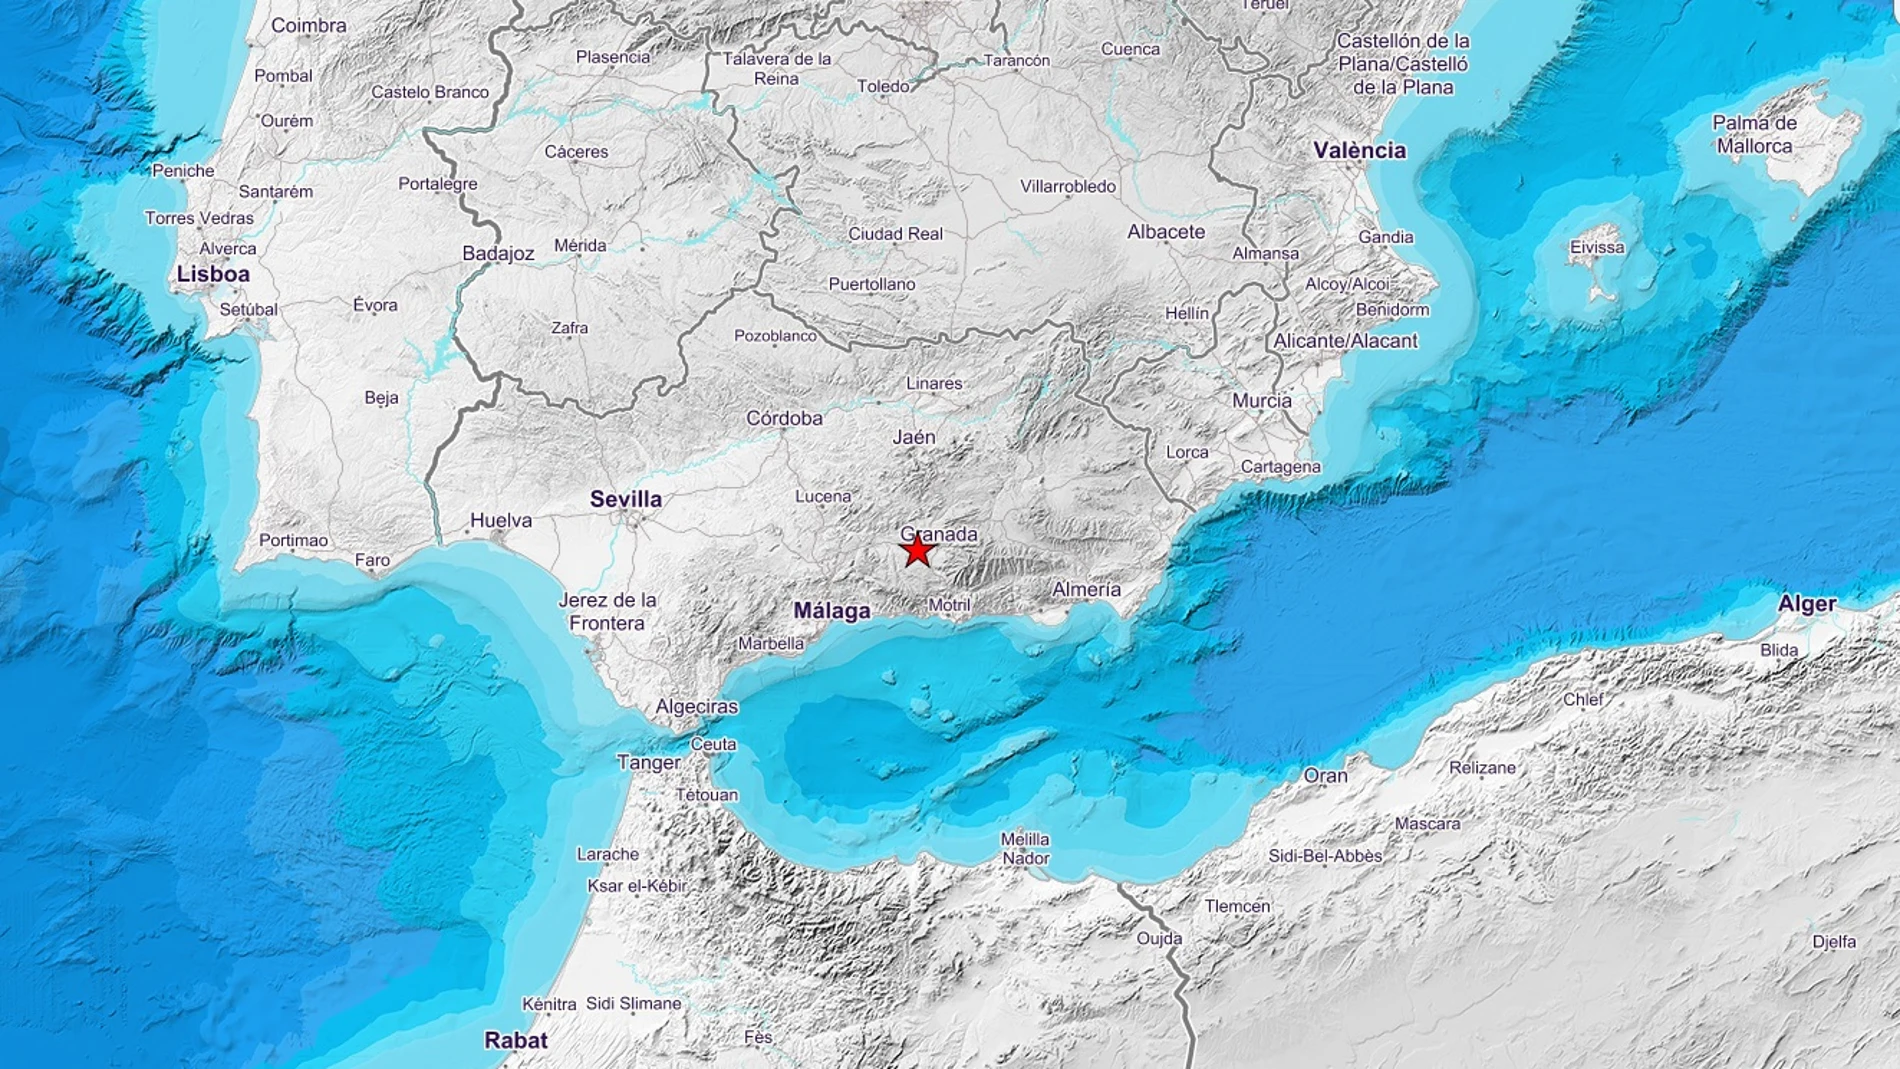 Terremoto registrado en la provincia de Granada